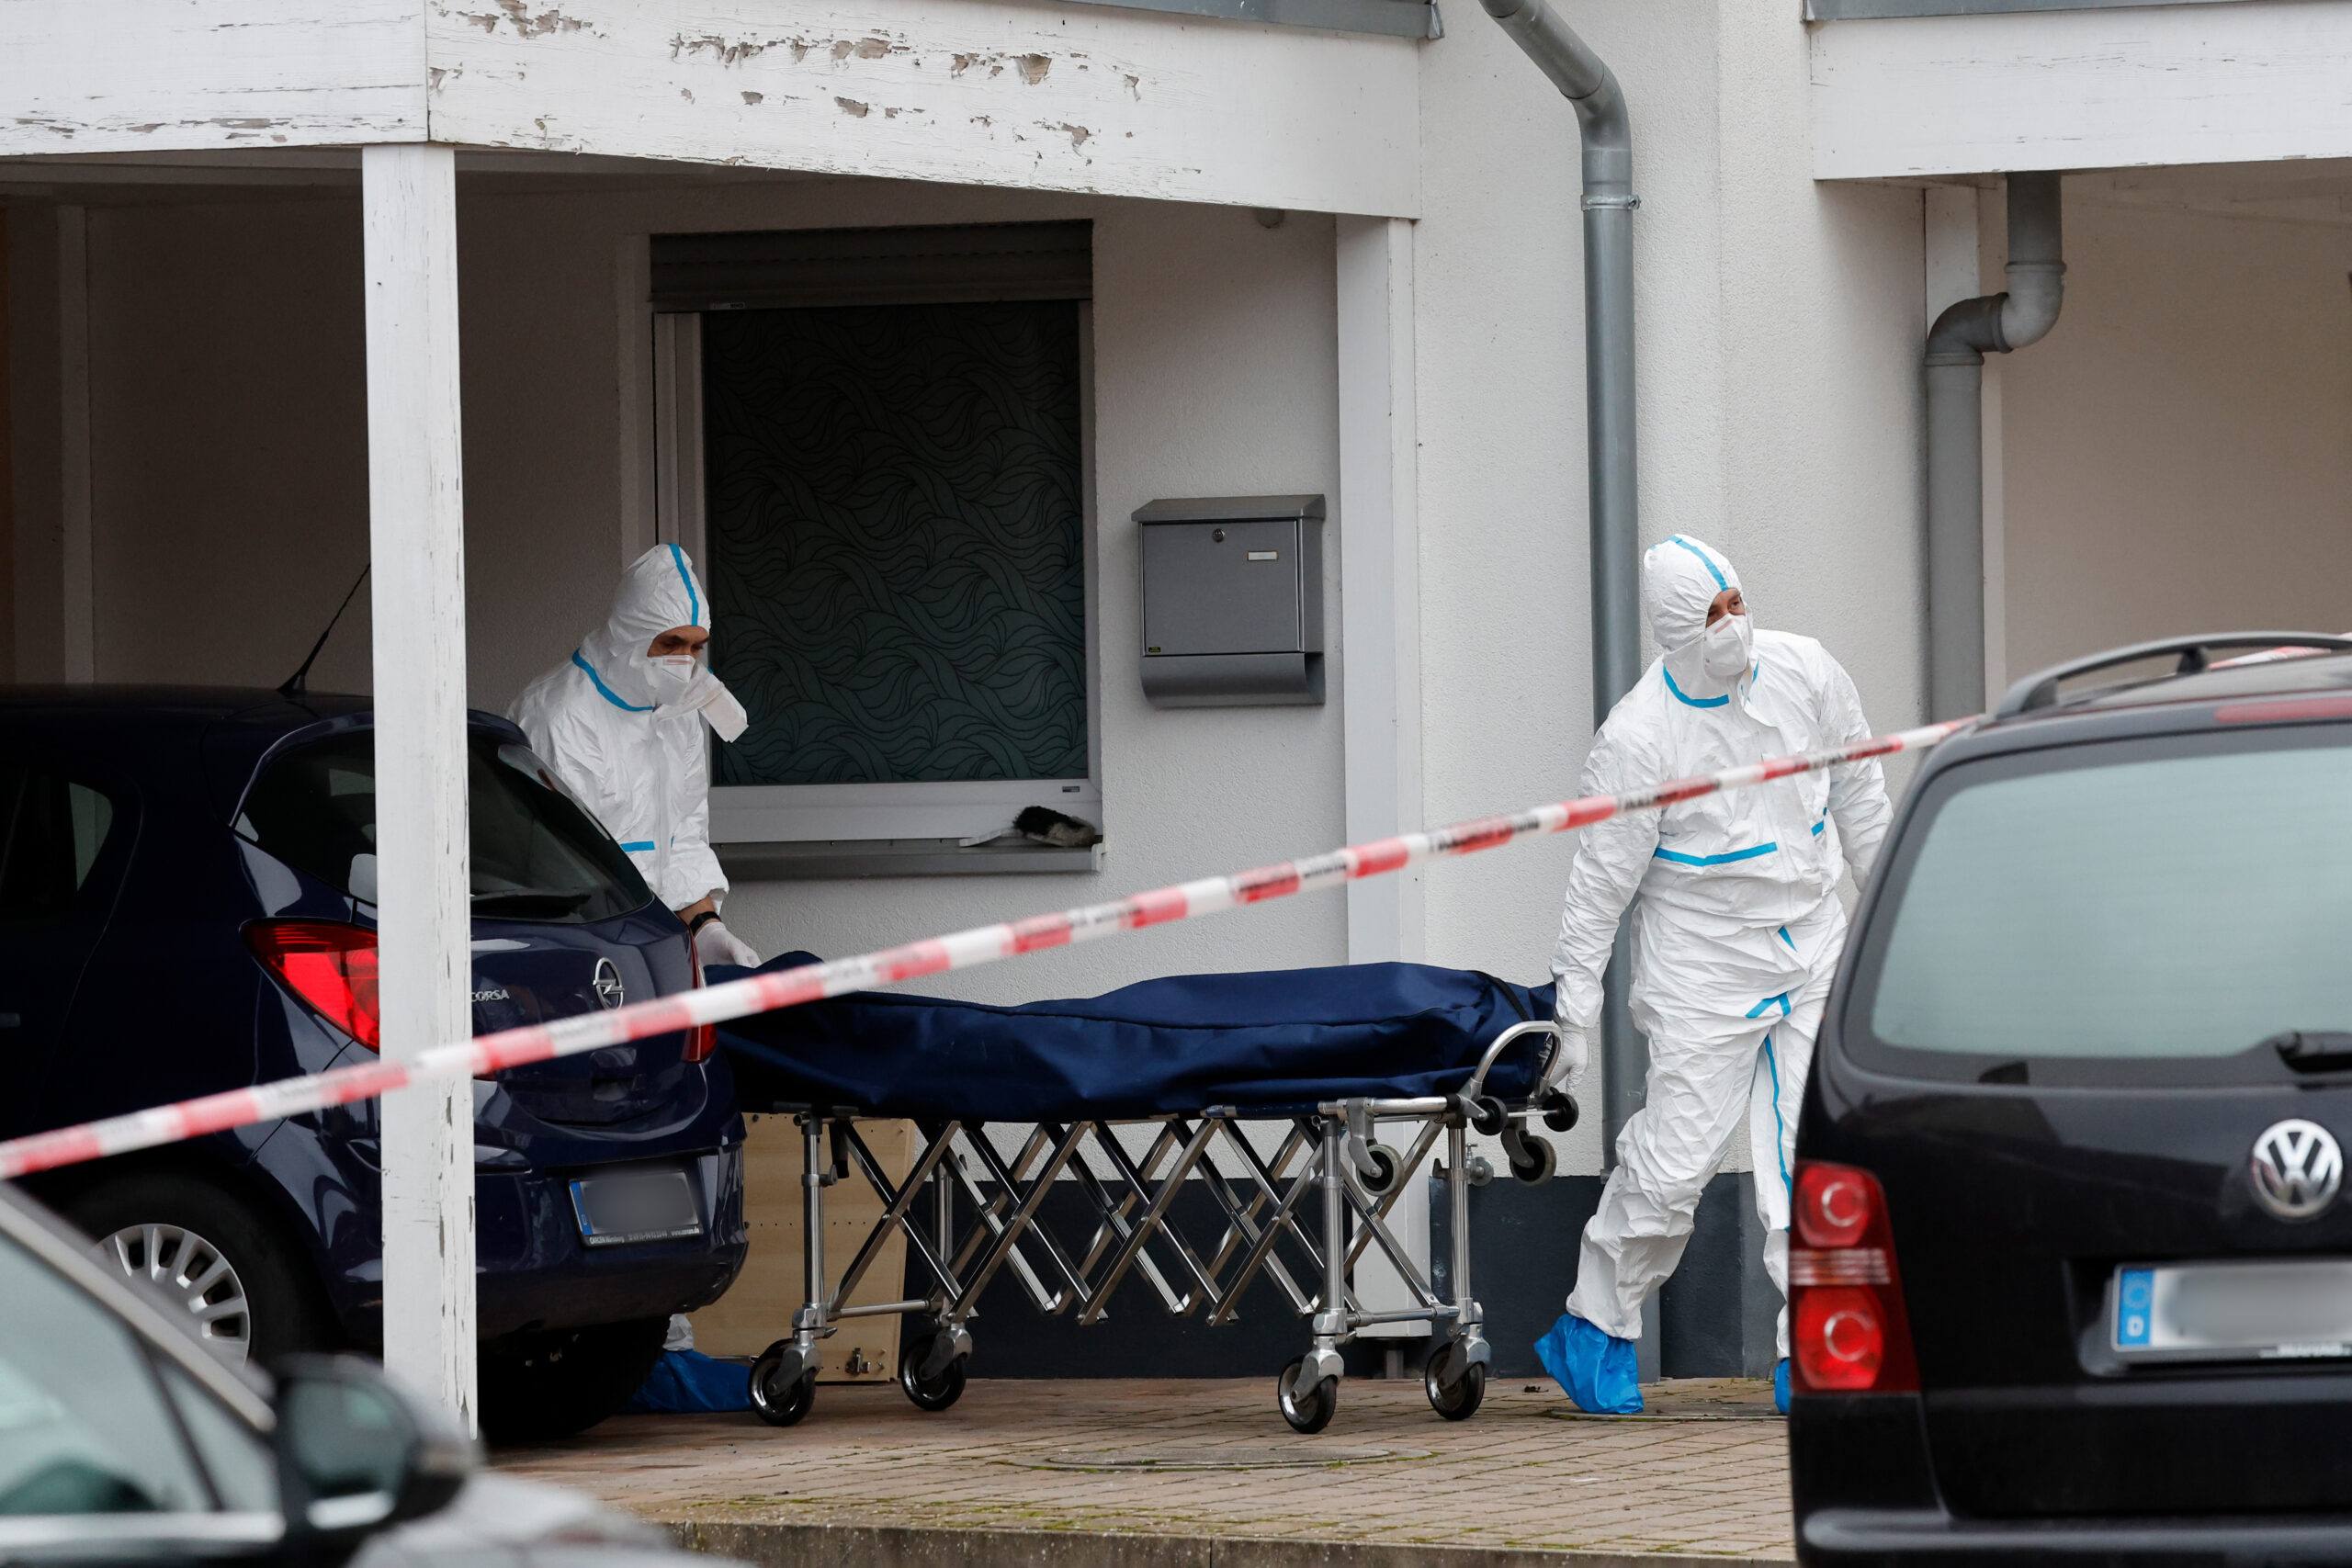 Mitarbeiter der Spurensicherung bringen die Leiche des 14-jährigen Mädchens aus dem Haus in Weisendorf.